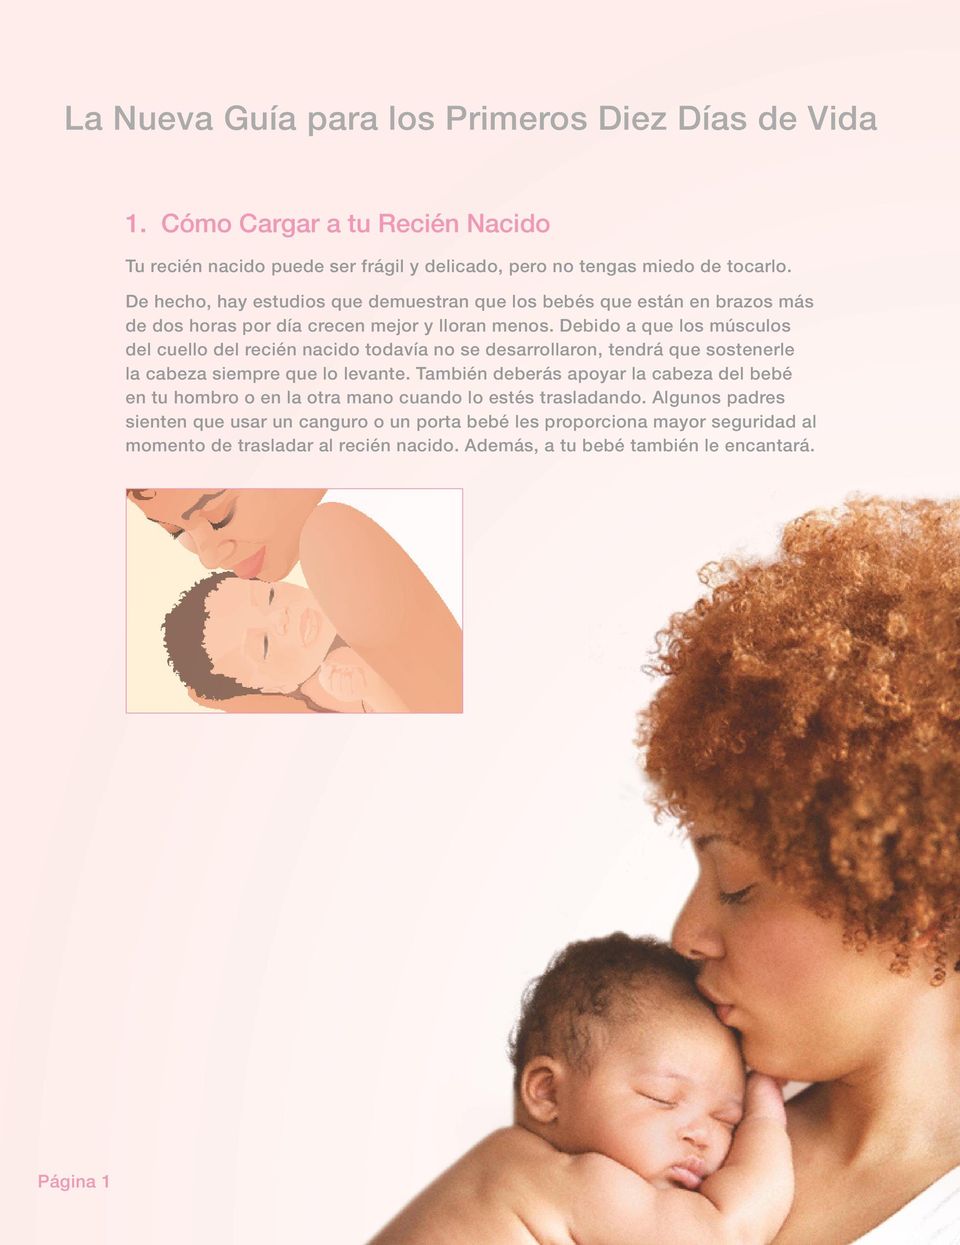 Debido a que los músculos del cuello del recién nacido todavía no se desarrollaron, tendrá que sostenerle la cabeza siempre que lo levante.